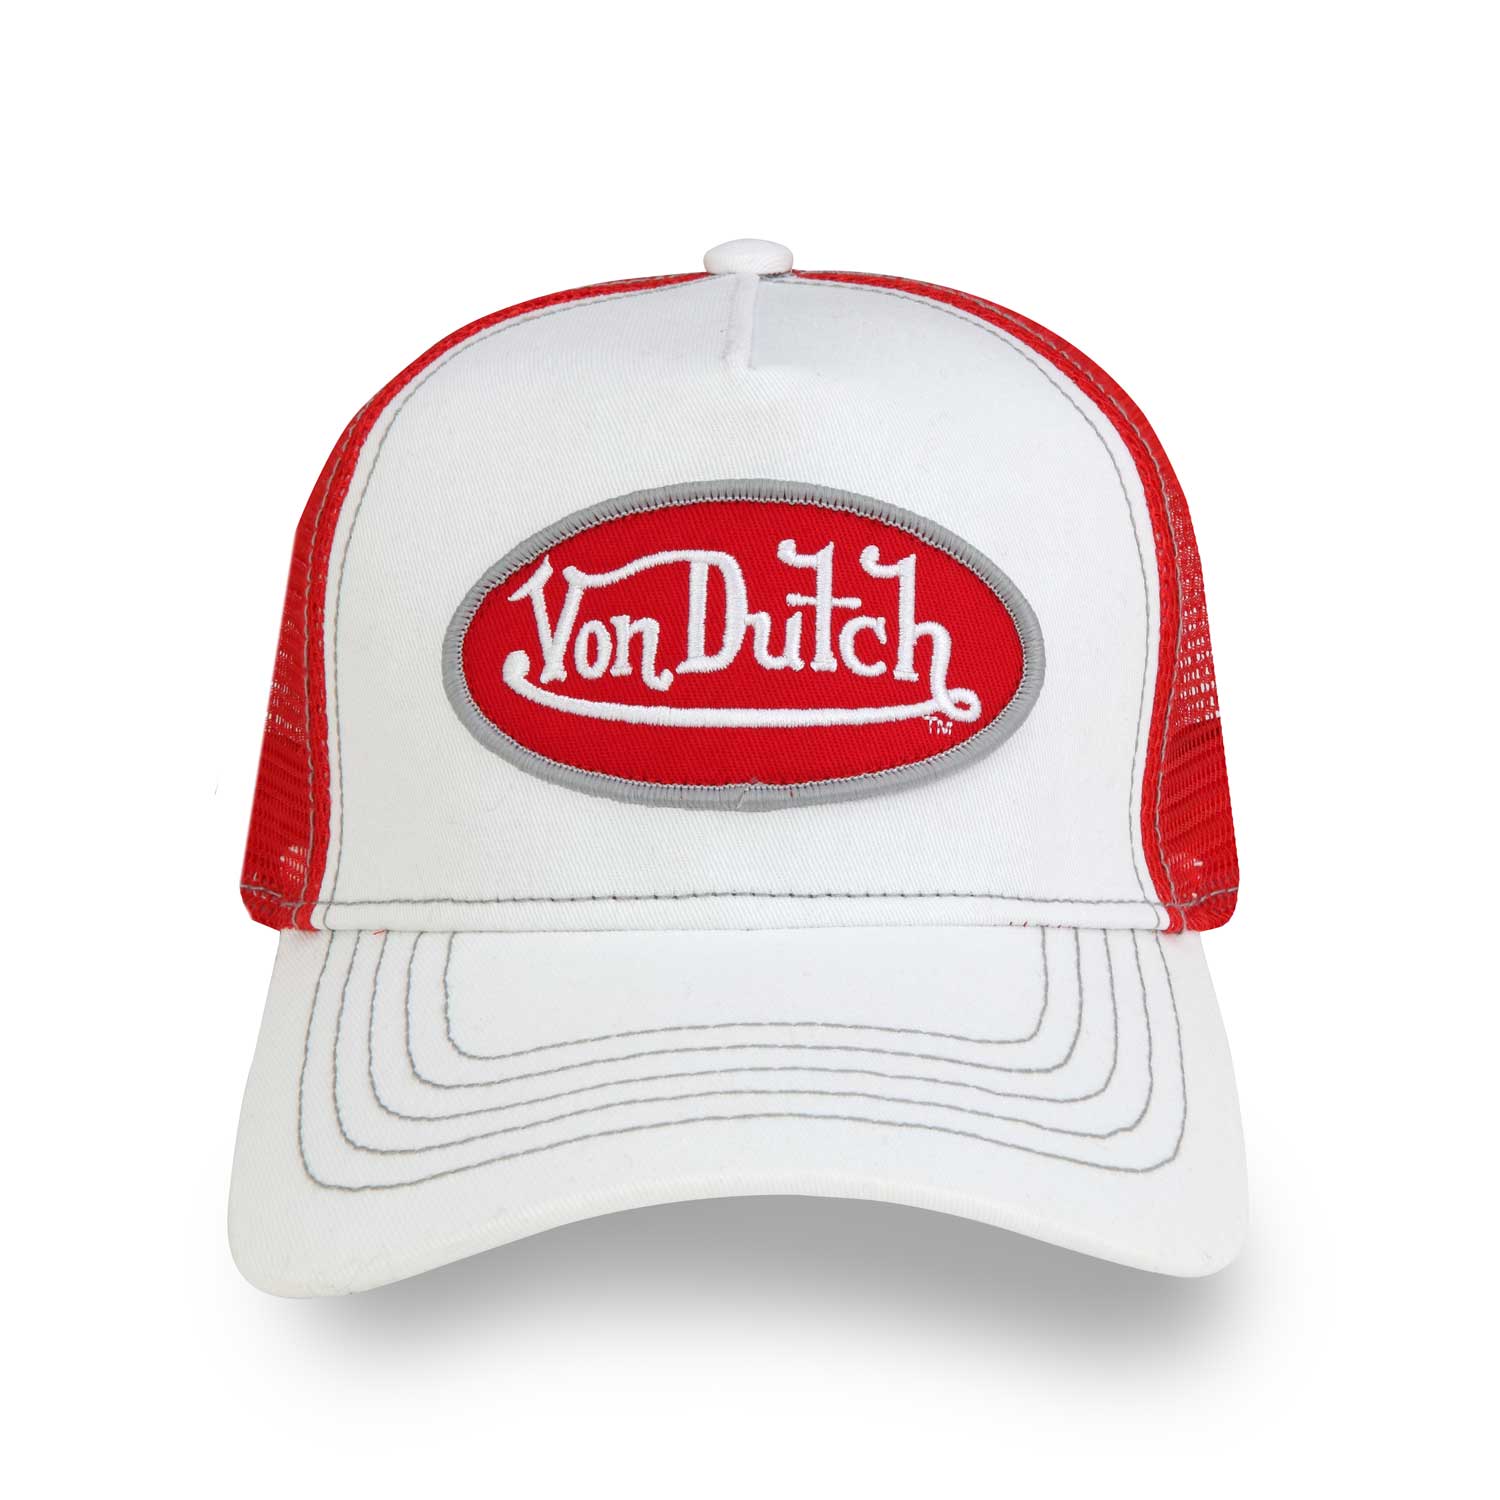 Von Dutch - Trucker Hat (White/Red) – Octane